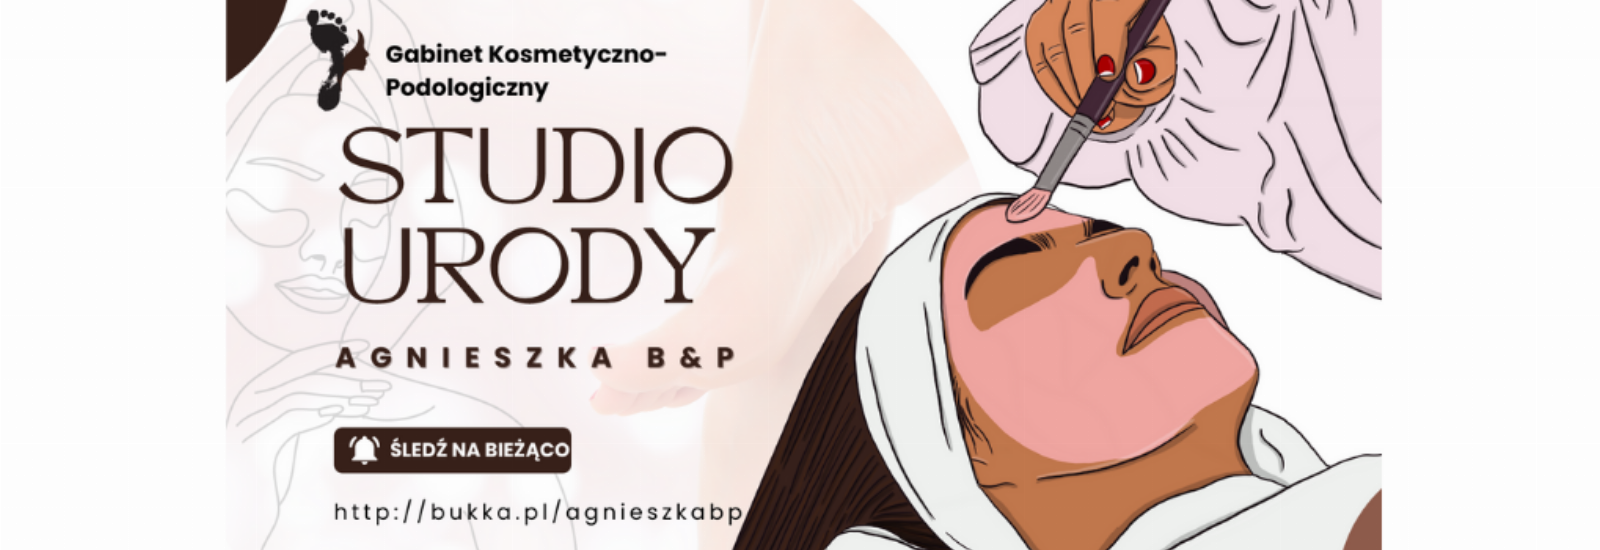 Gabinet Kosmetyczno-Podologiczny,  Studio Urody Agnieszka B&P, Paterek, 17-20220426-131622-0016